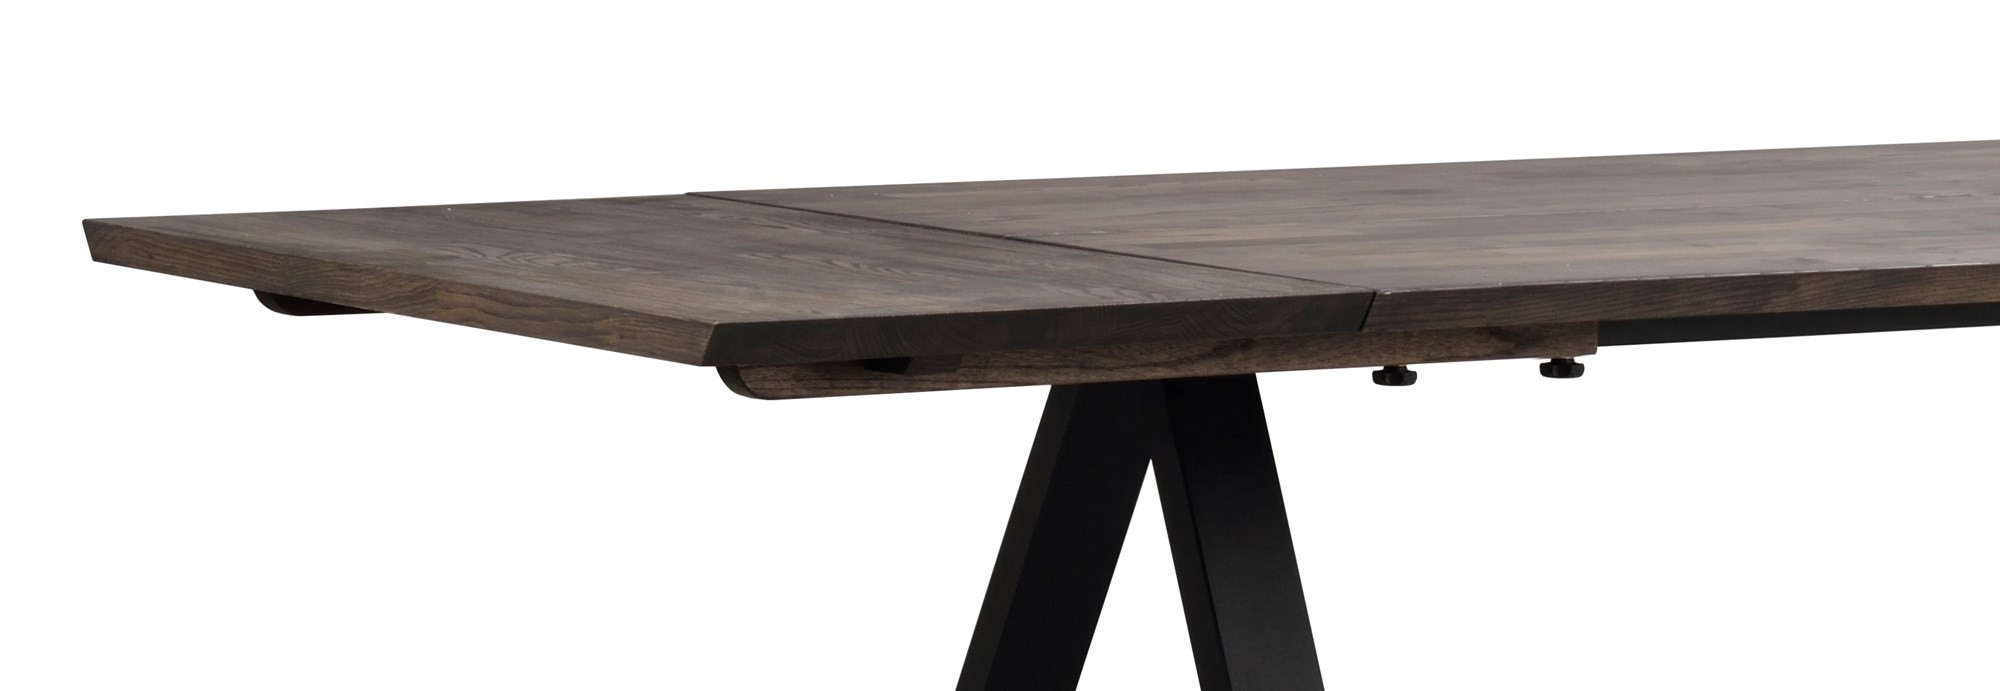 Stół rozkładany Carradale 220(320)x100, brązowy/czarny